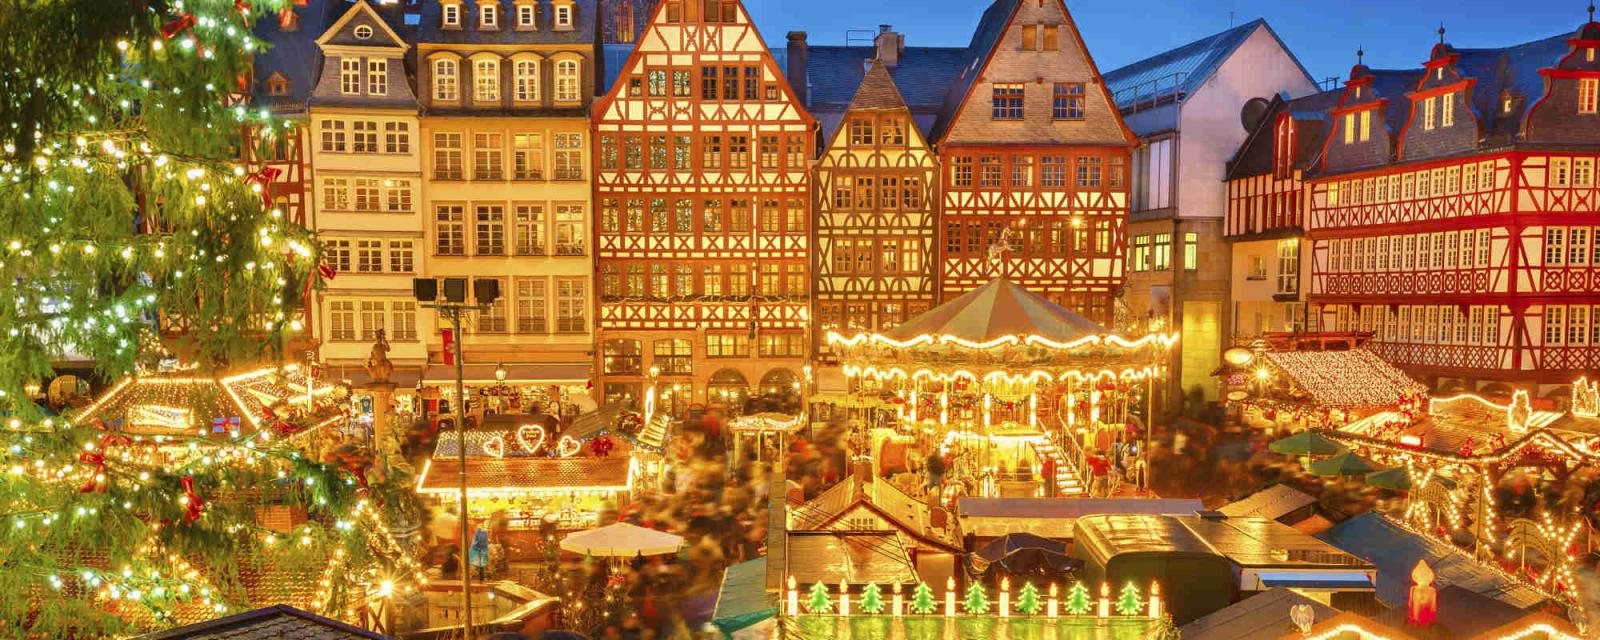 5x tips voor een warme kerst in Frankfurt | CityZapper 